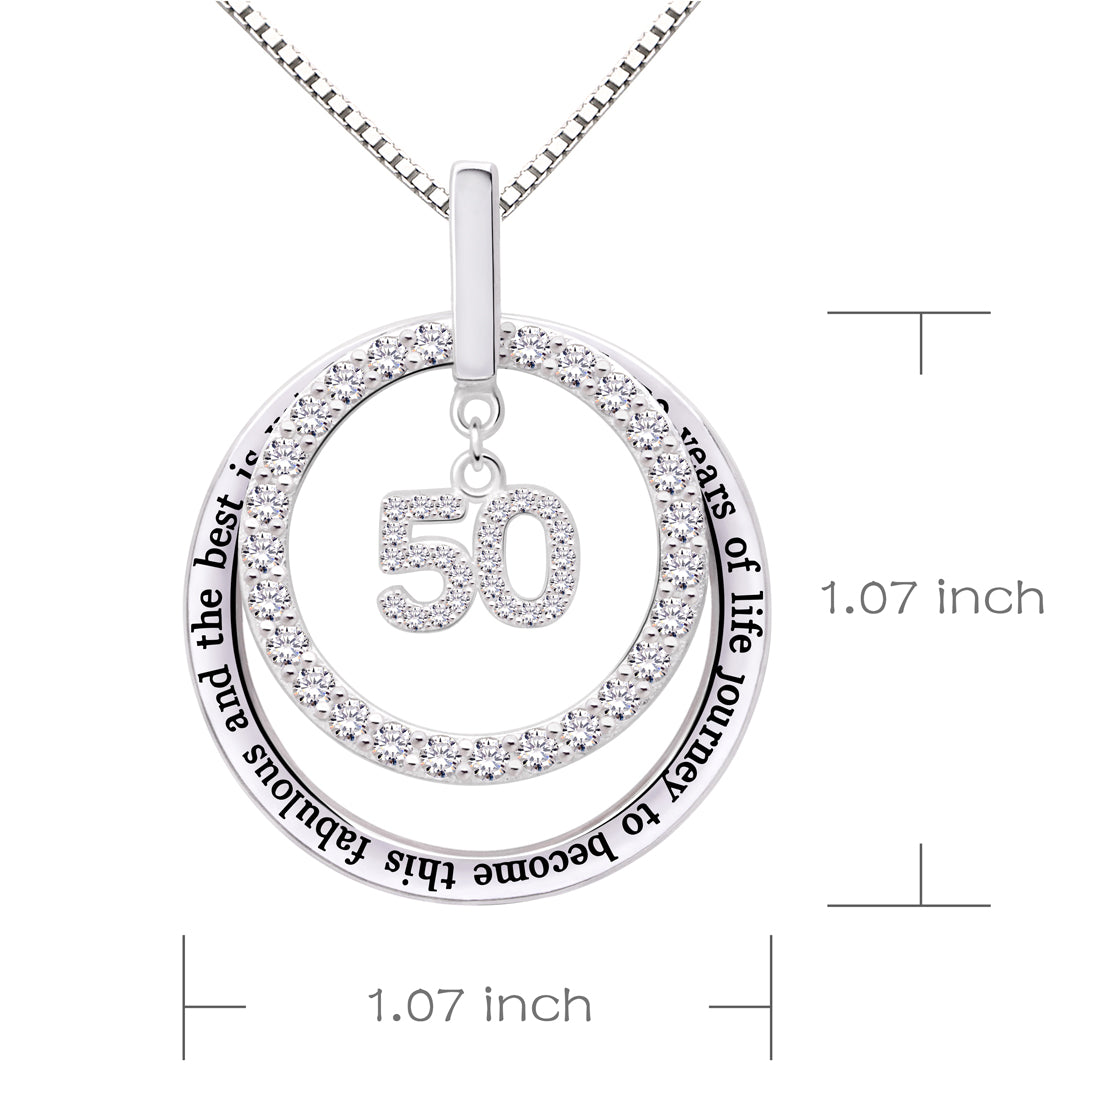 ALOV Jewelry Sterling Silber 50. Geburtstag Es hat 50 Jahre Lebensreise gedauert, um diese fabelhafte und das Beste kommt noch kommende Halskette mit kubischem Zirkonia-Anhänger zu werden